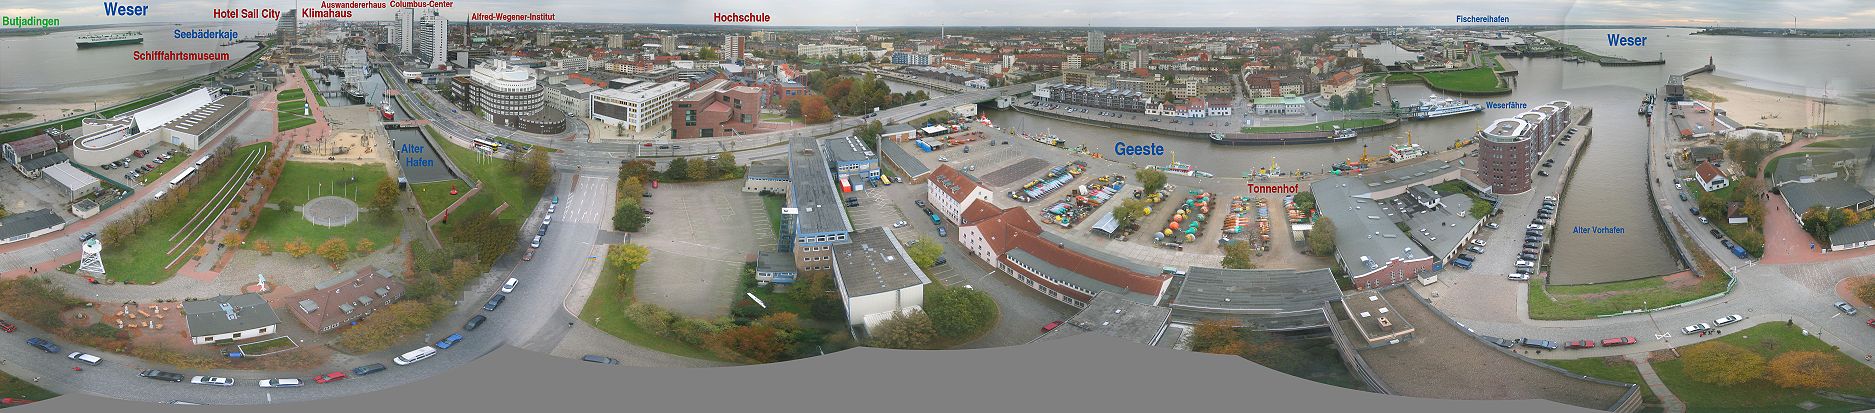 Panorama von Bremerhaven (20. Okt. 2007), vom Radarturm aus aufgenommen. Im linken Teil das Zentrum mit „Columbus-Center“ und den in Bau befindlichen Havenwelten